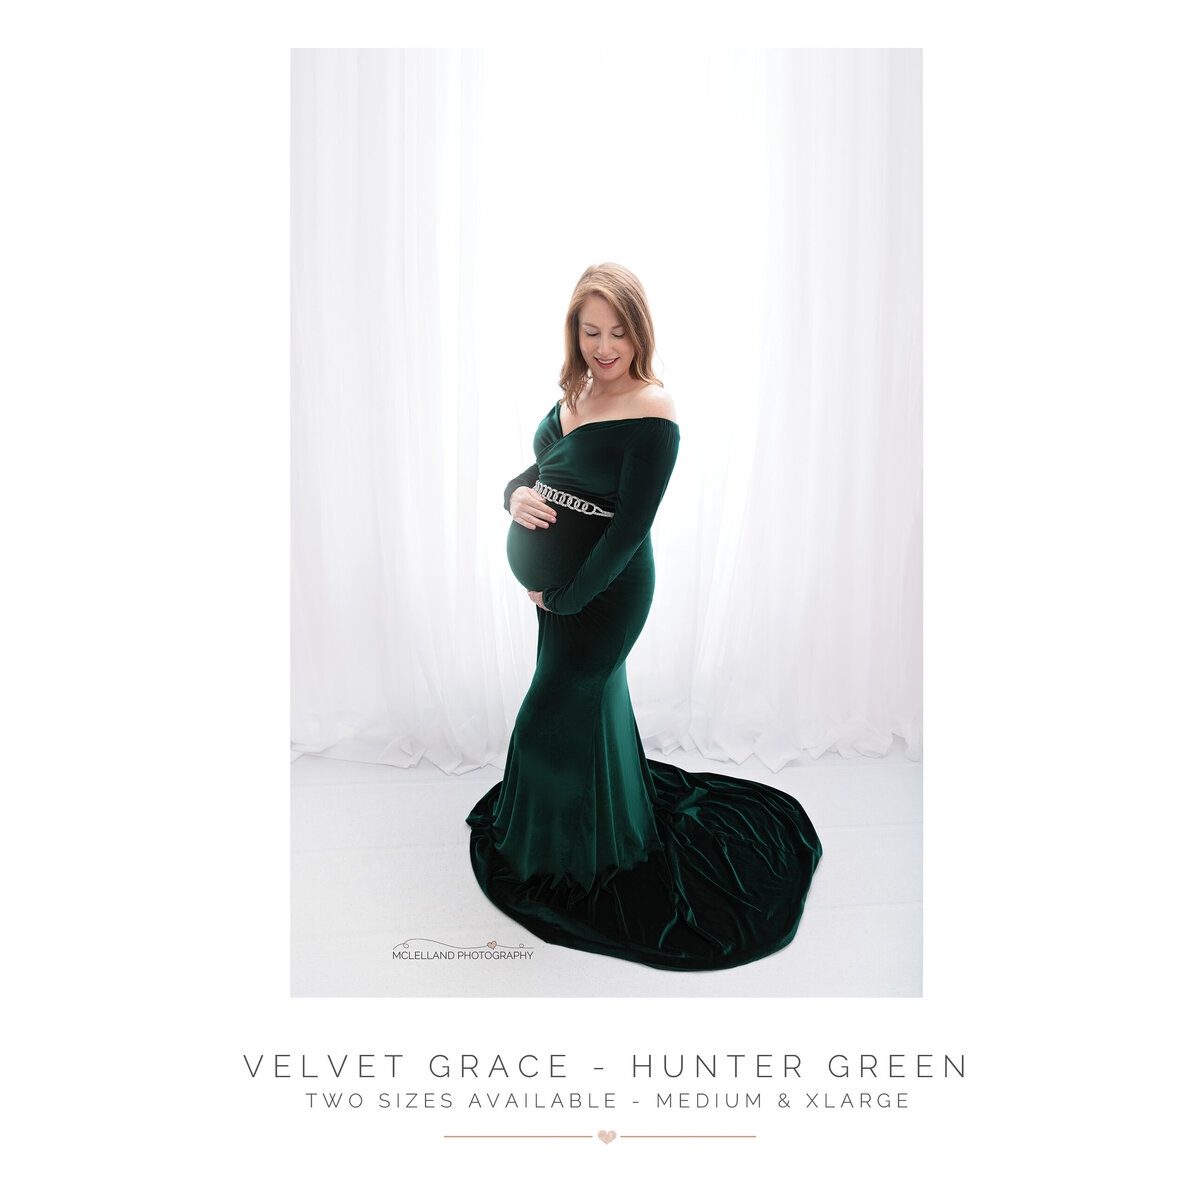 Velvet Grace - Hunter Green